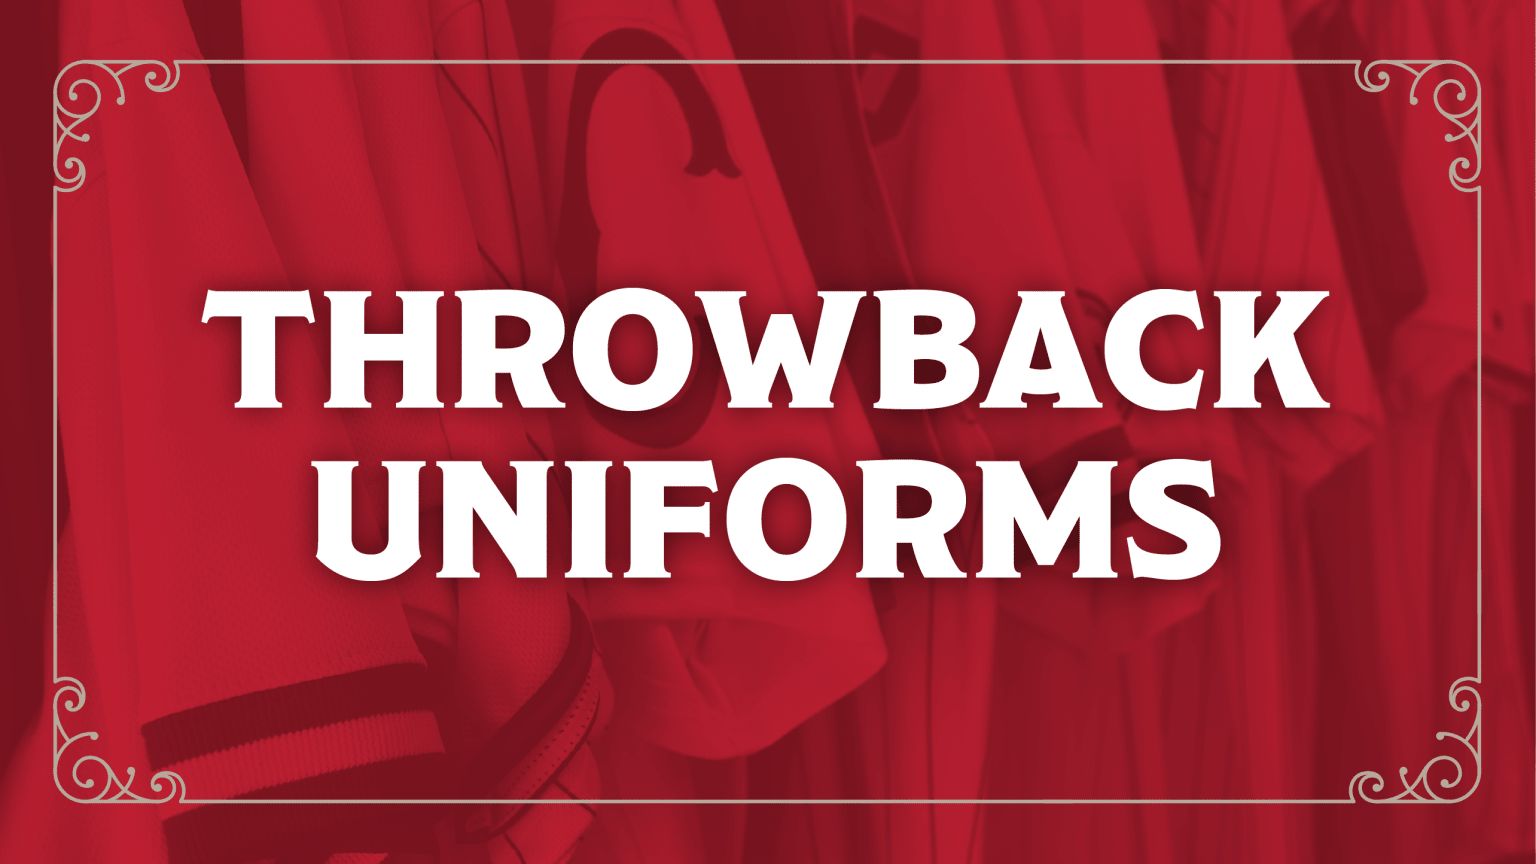 Mens Cincinnati Reds Throwback Jerseys, Reds Retro & Vintage Throwback  Uniforms